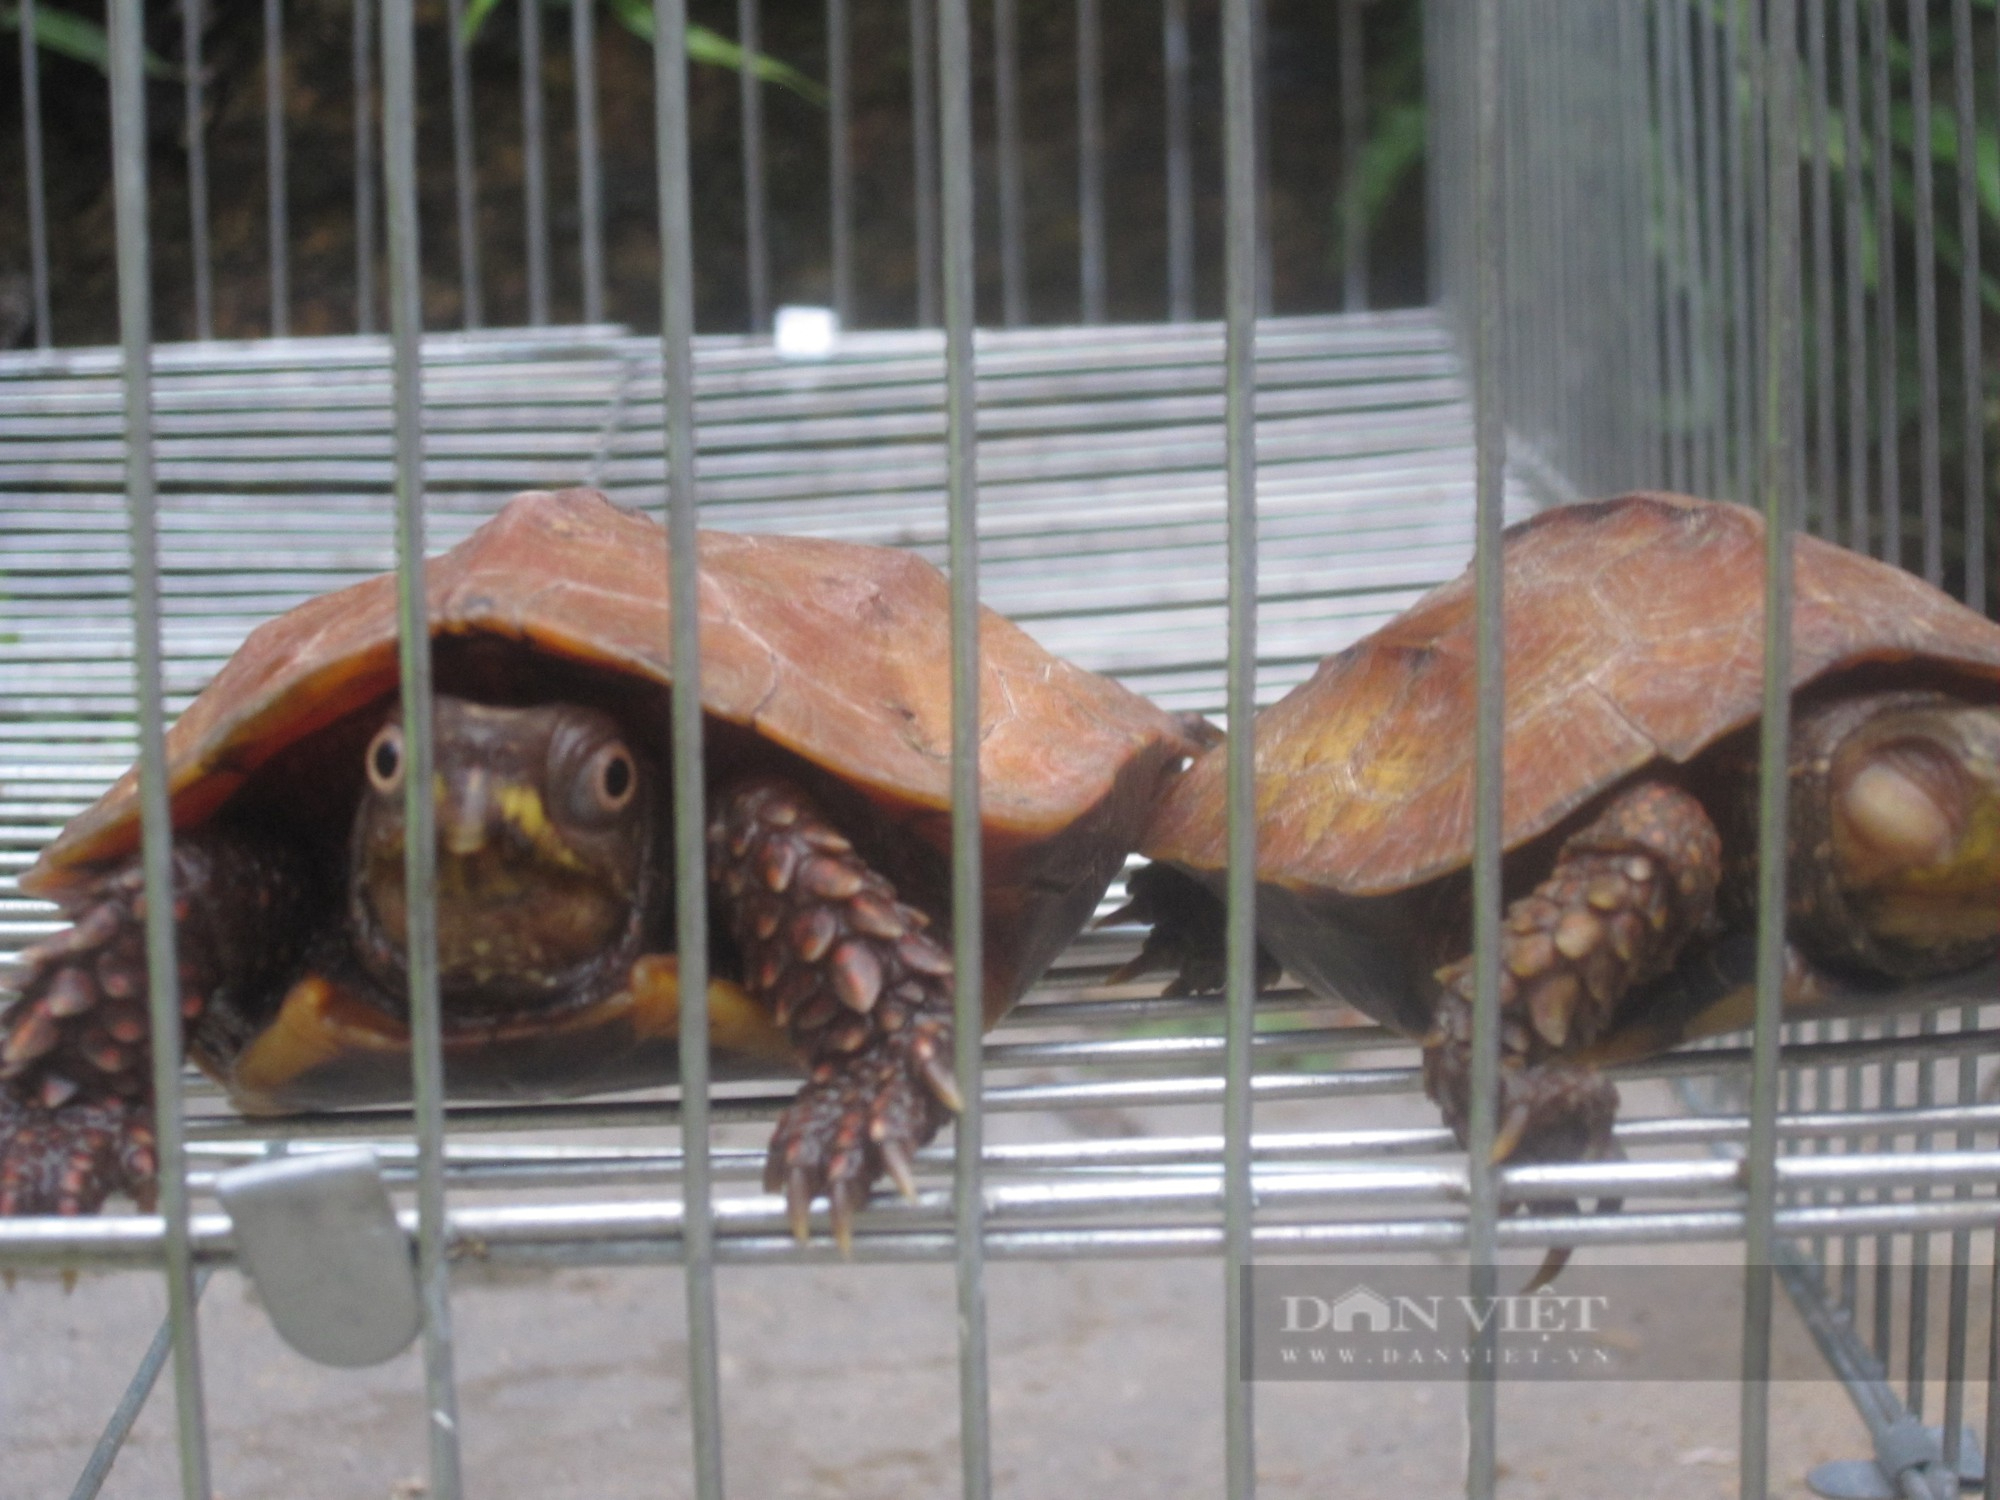 Săn bắt, buôn bán rùa diễn ra phổ biến nhất nhất trong các loài hoang dã ở Việt Nam - Ảnh 1.